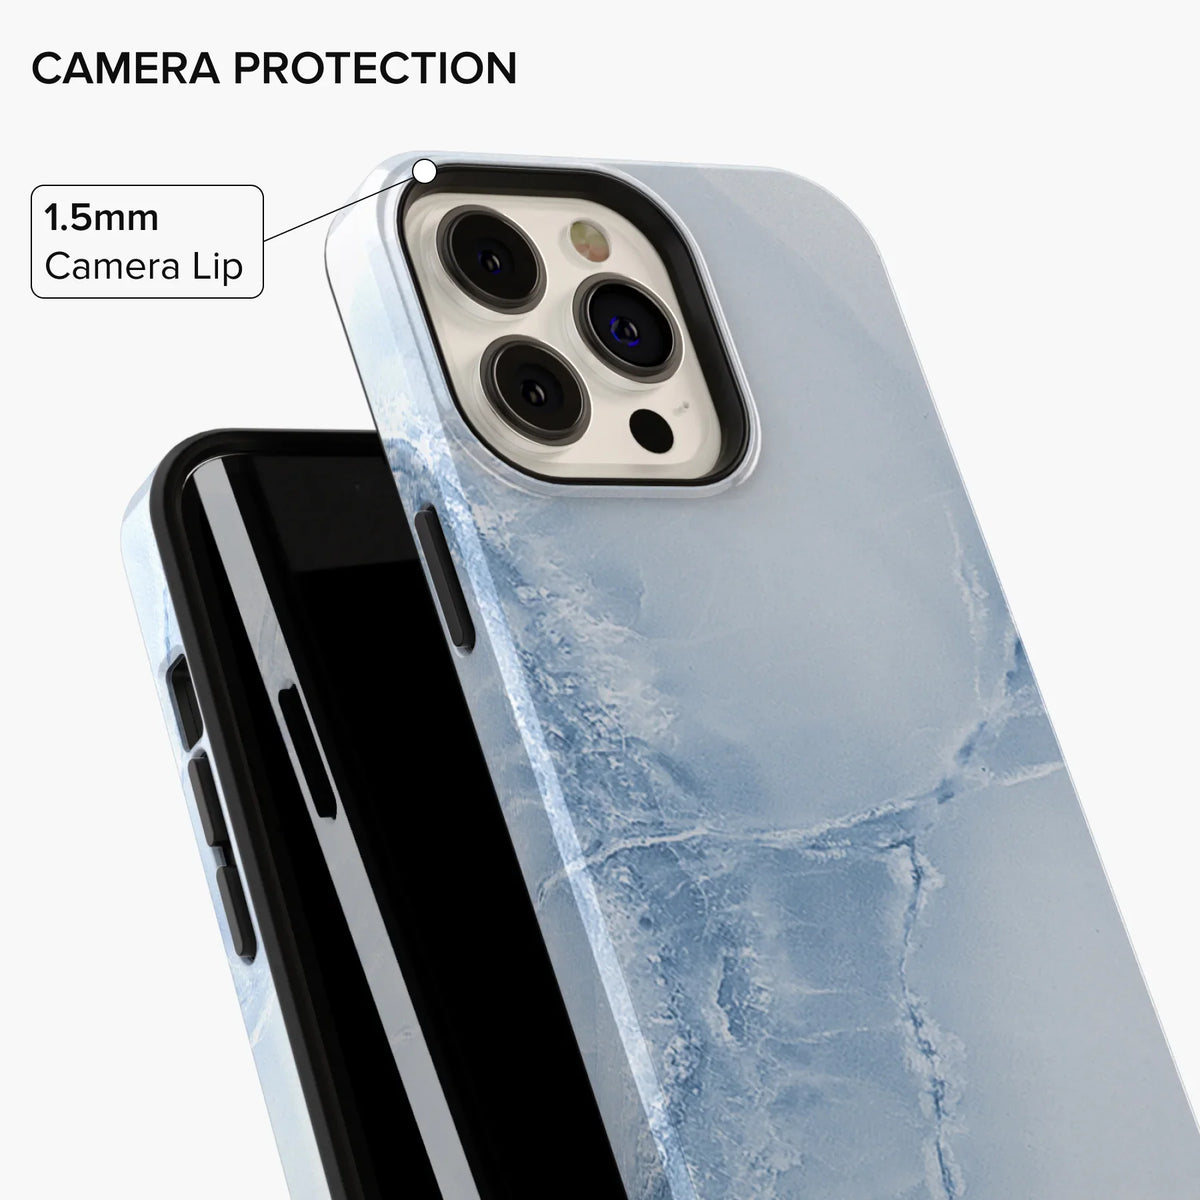 Arctic Marble iPhone Case - iPhone 12 Mini